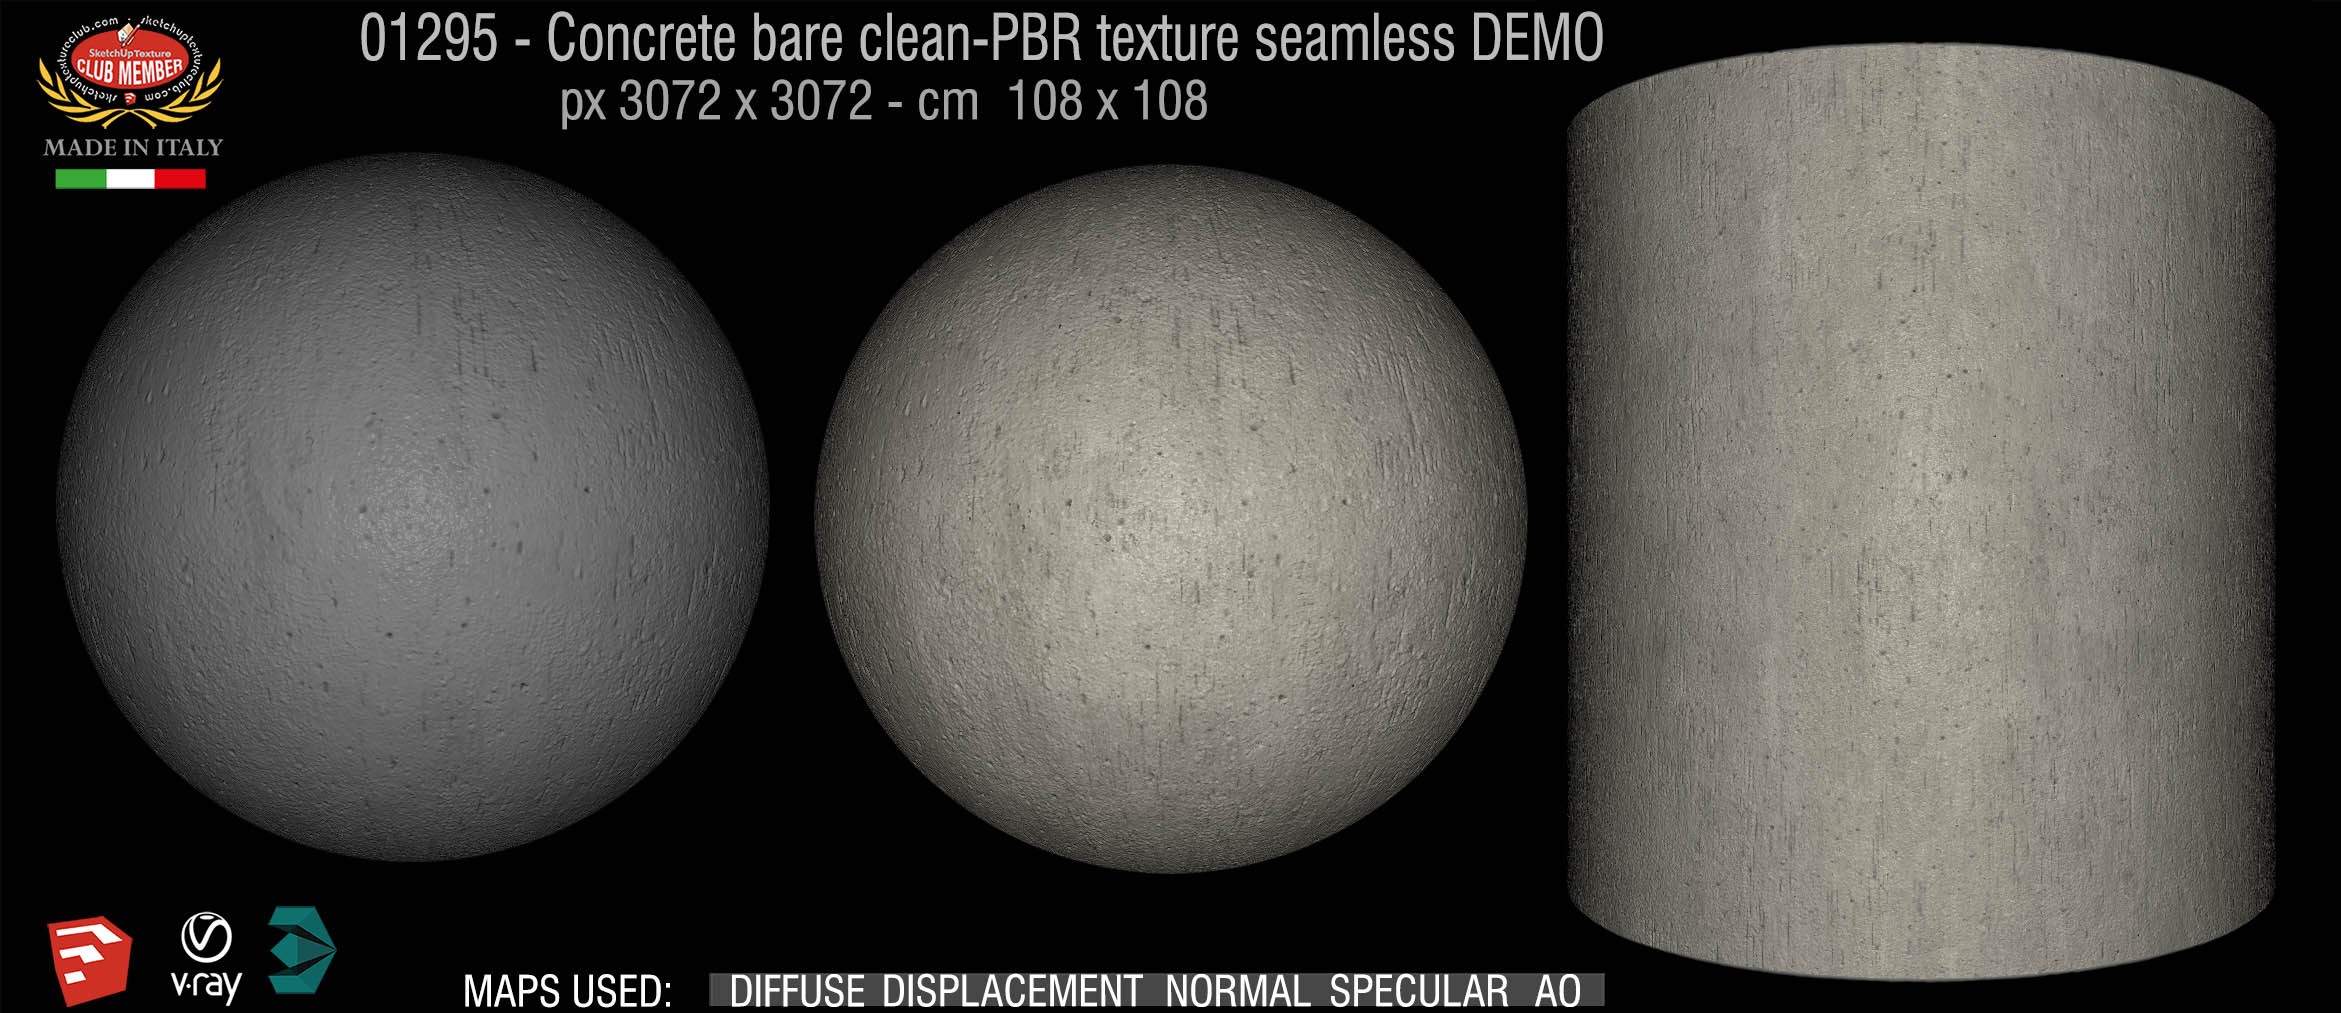 01295 Concrete bare clean-PBR texture seamless DEMO